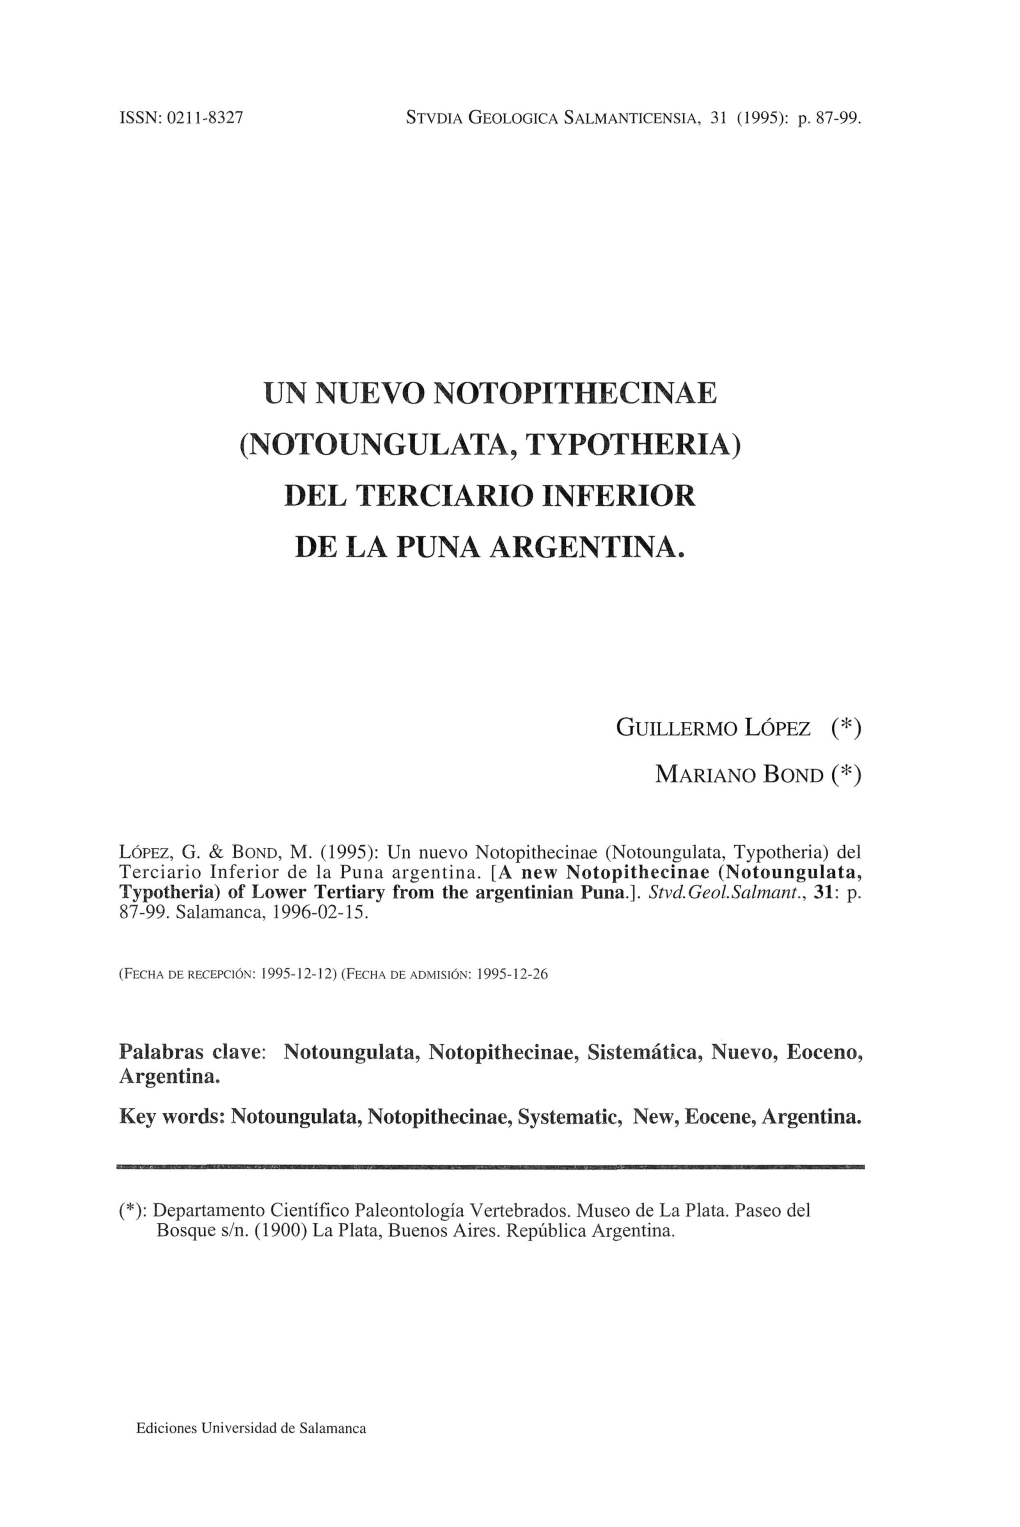 Un Nuevo Notopithecinae (Notoungulata, Typotheria) Del Terciario Inferior De La Puna Argentina